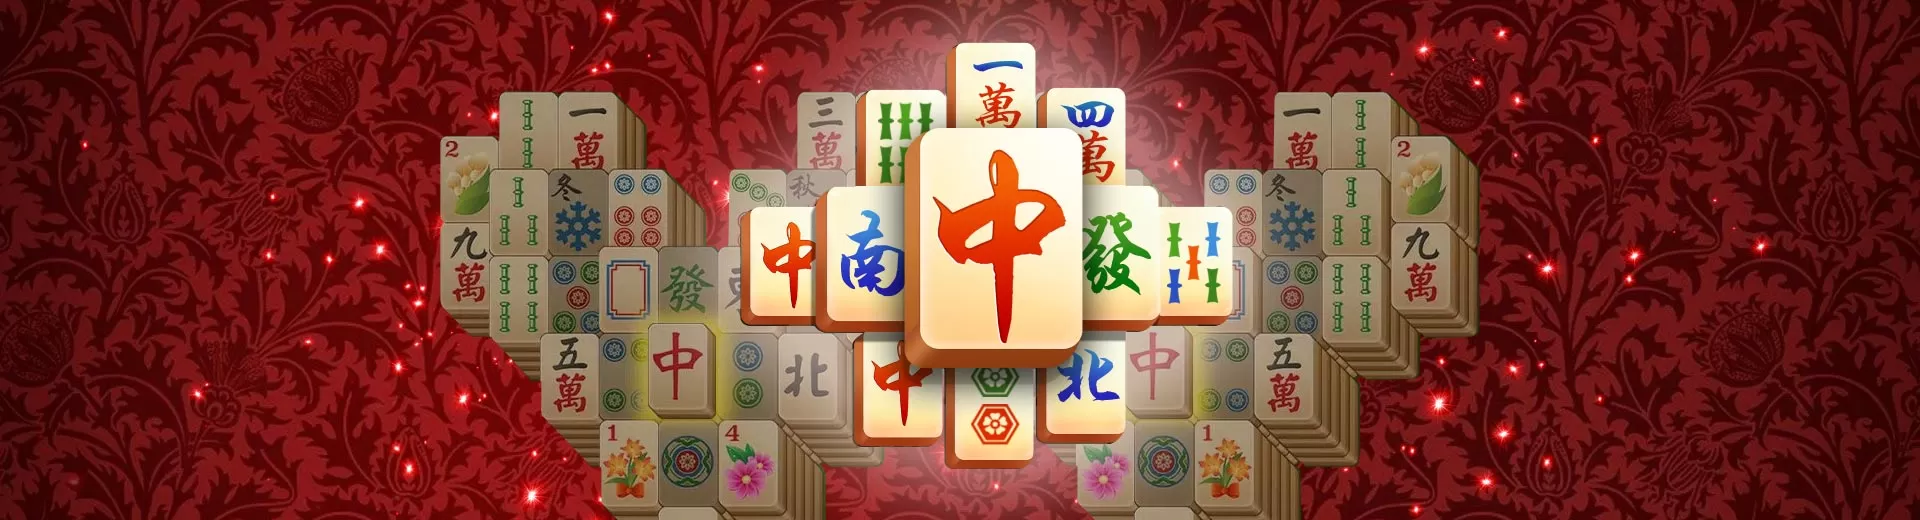 Mahjong Emulator Pc